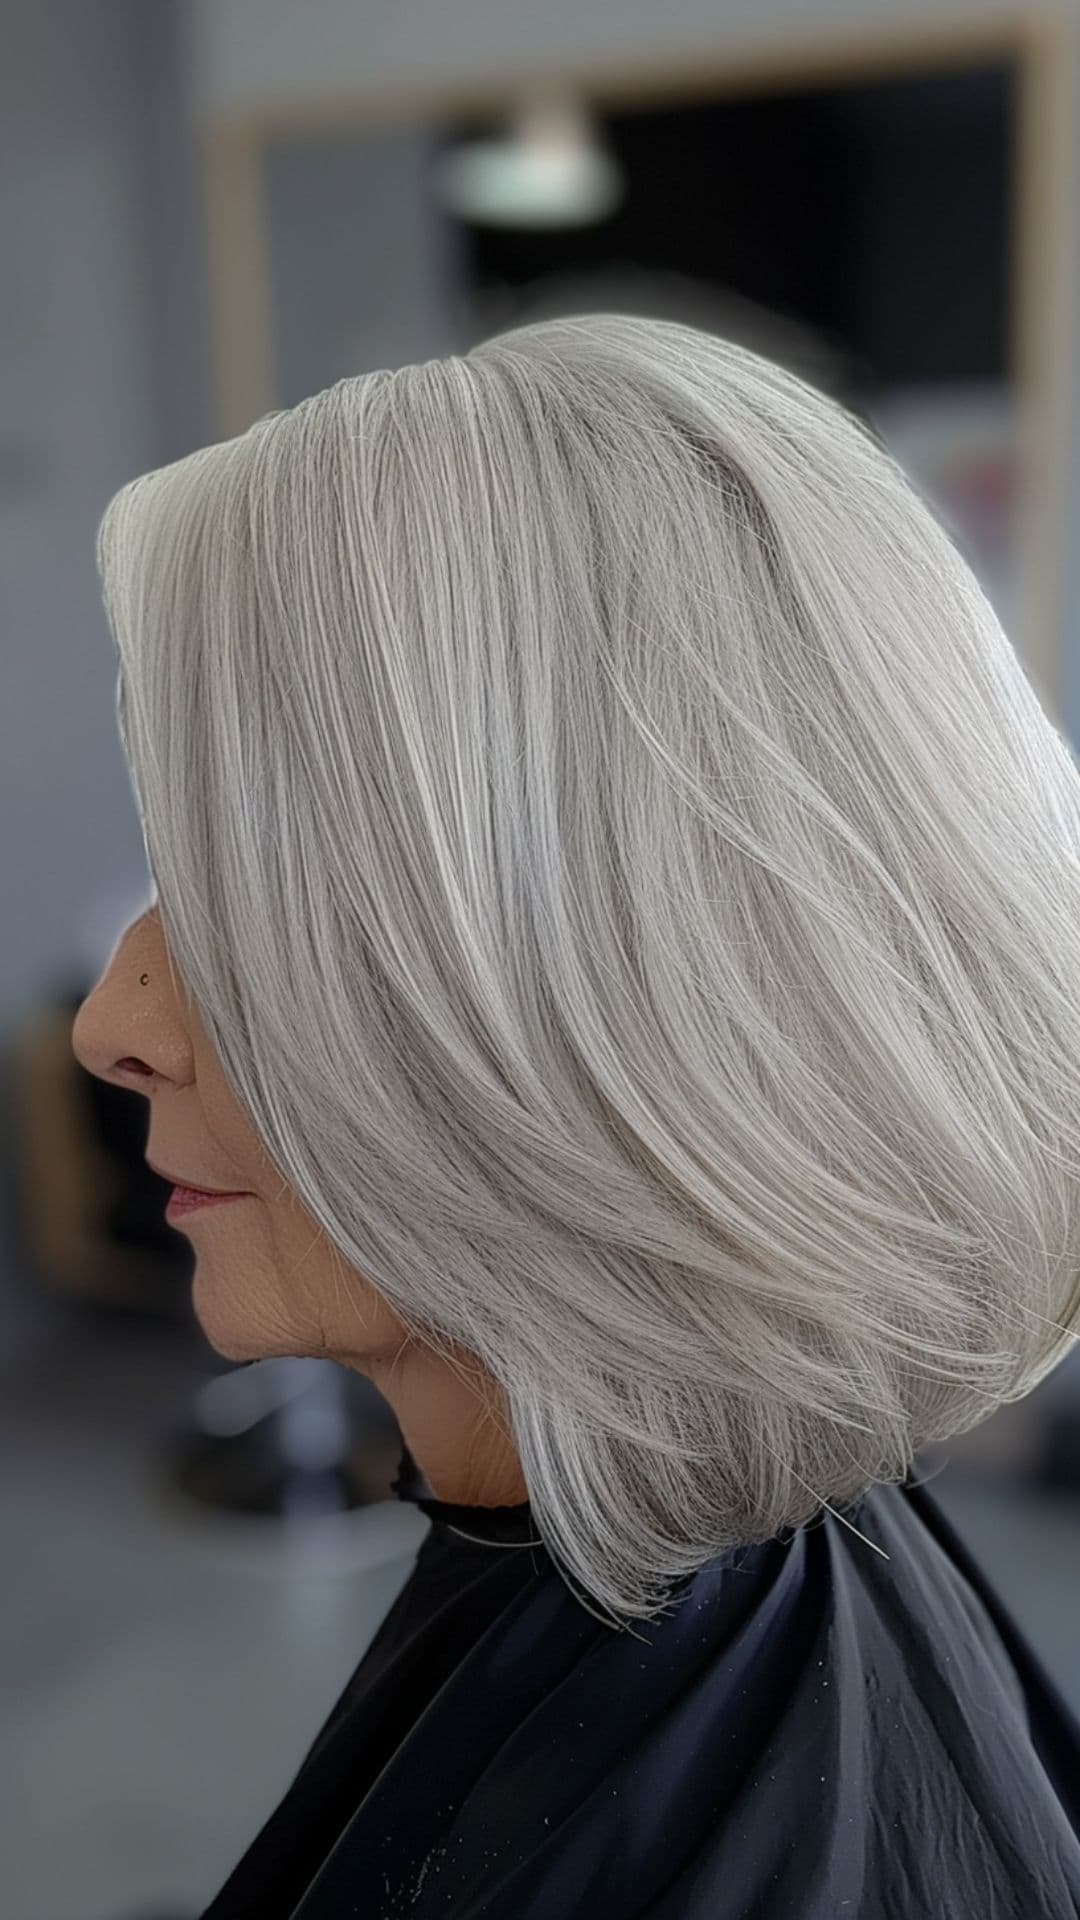 An old woman modelling a white blonde sleek bob.